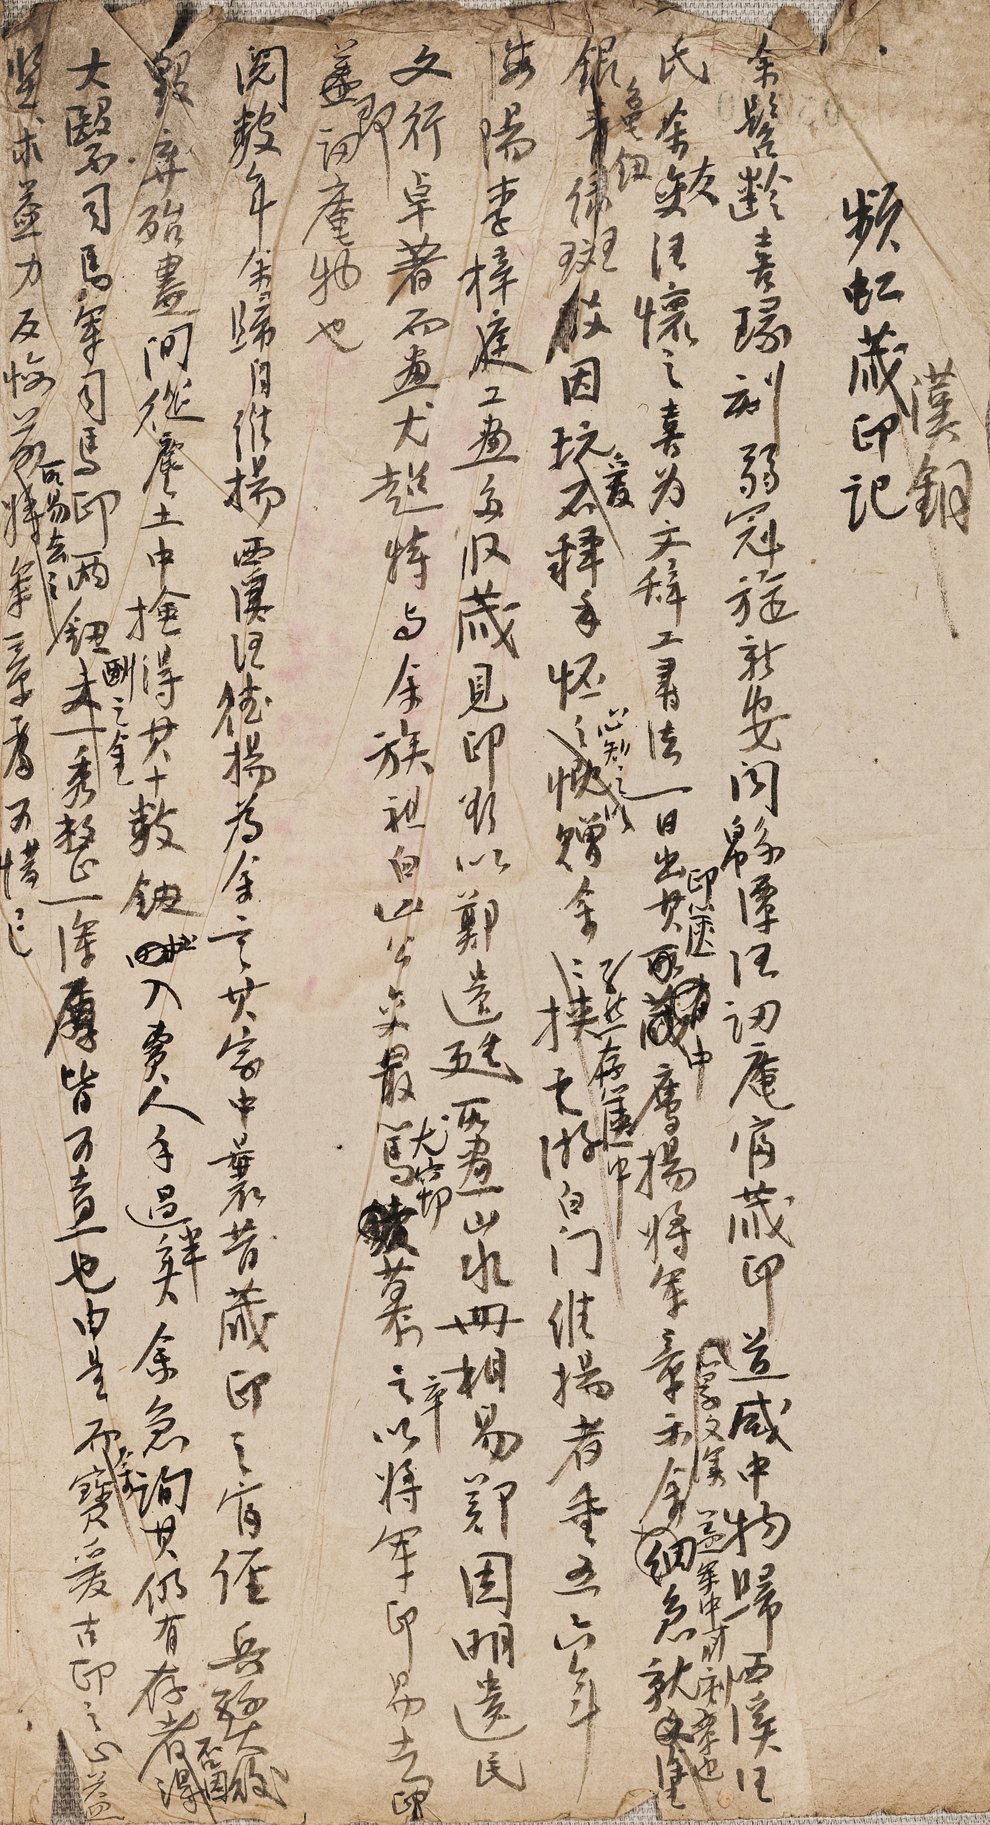 Manuscript of "Bronze Seal of Tibetan and Han Dynasties"